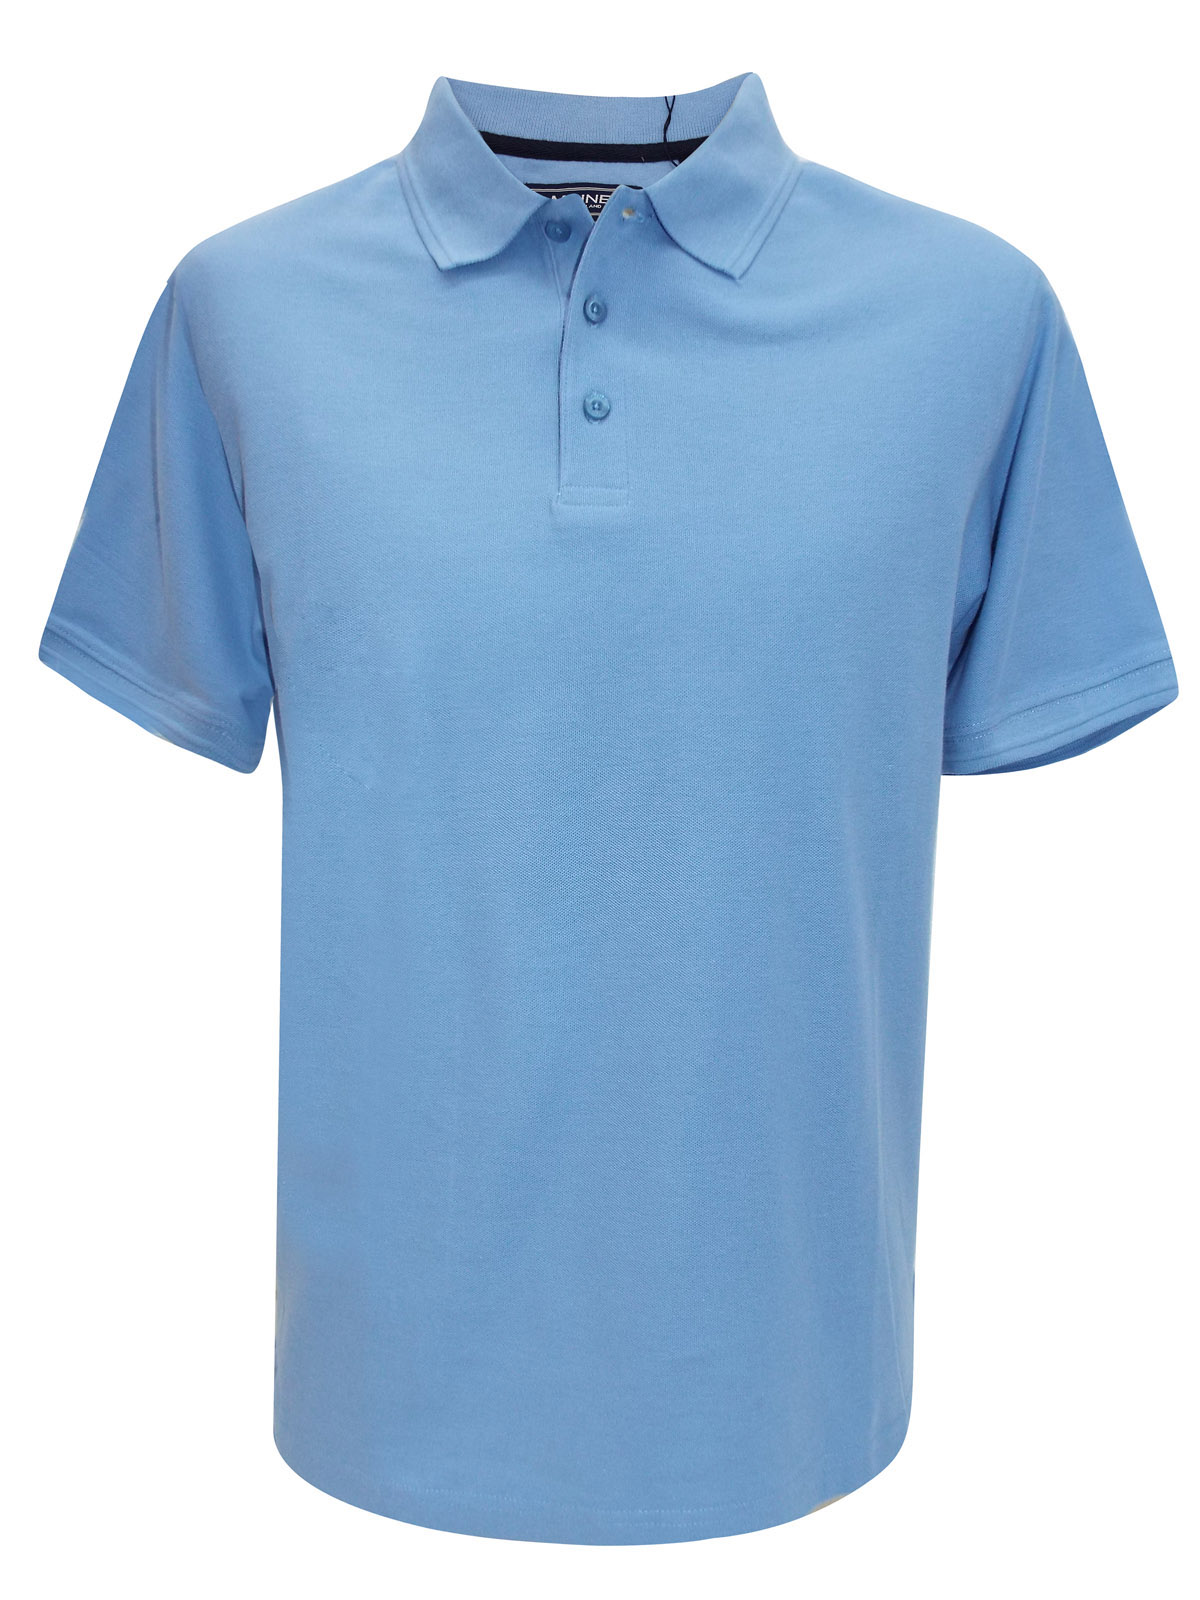 Debenhams - - D3benhams PALE-BLUE Pure Cotton Polo Shirt - Size Small